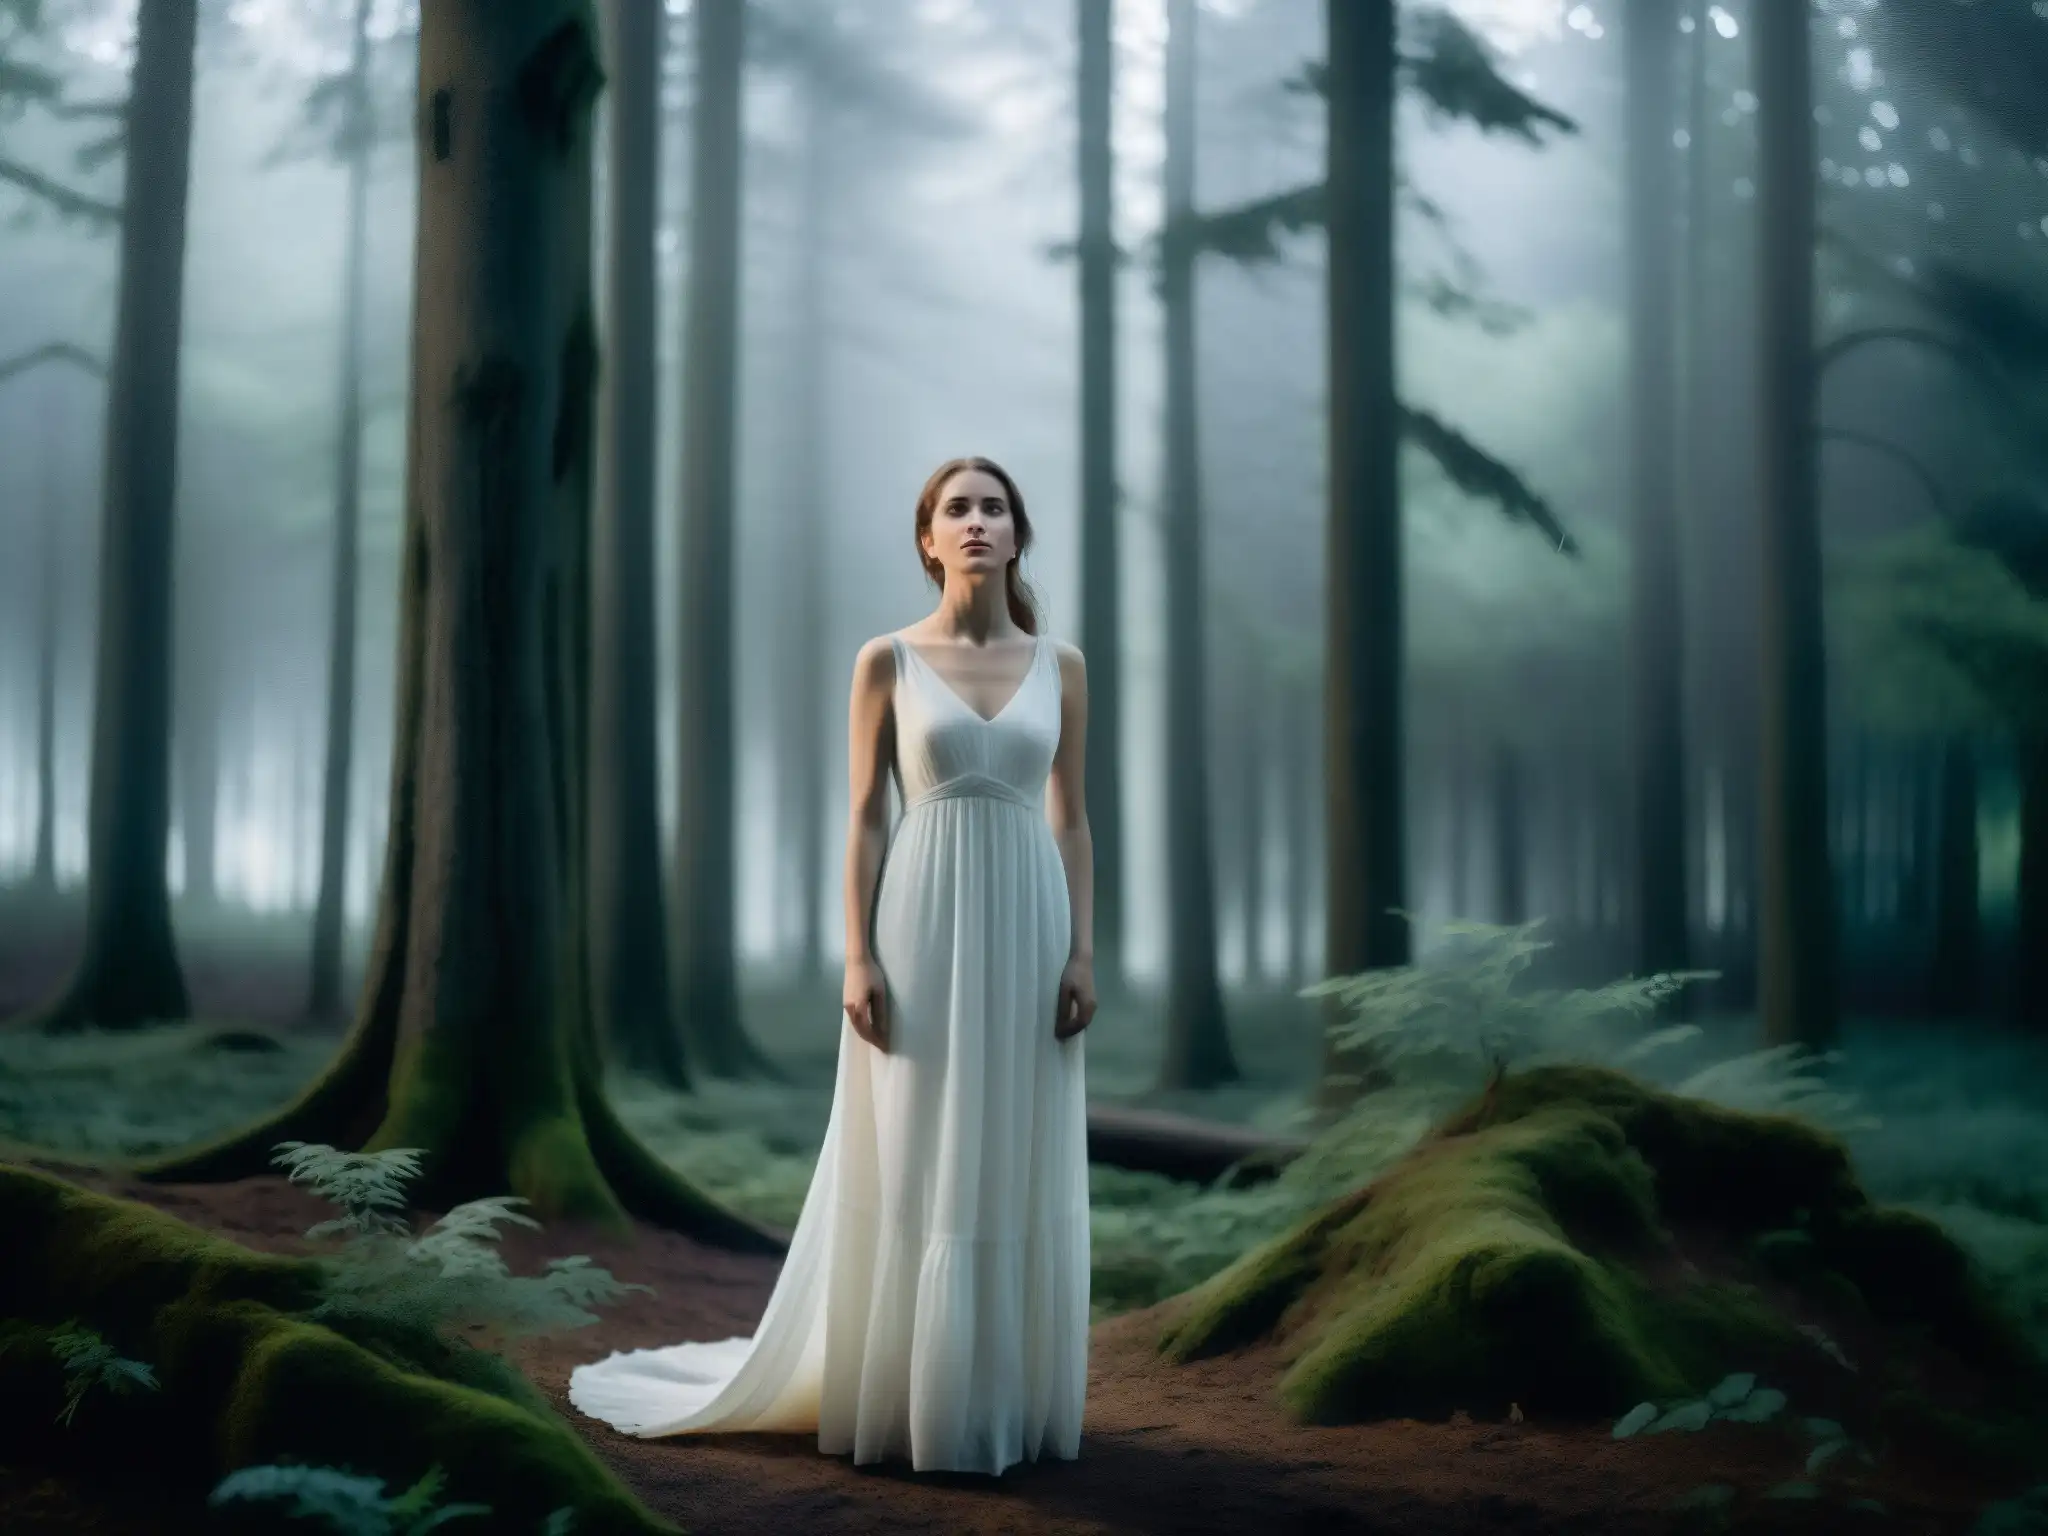 Una mujer en vestido blanco en un bosque brumoso, evocando misterio y melancolía, ideal para mitos y leyendas de apariciones femeninas